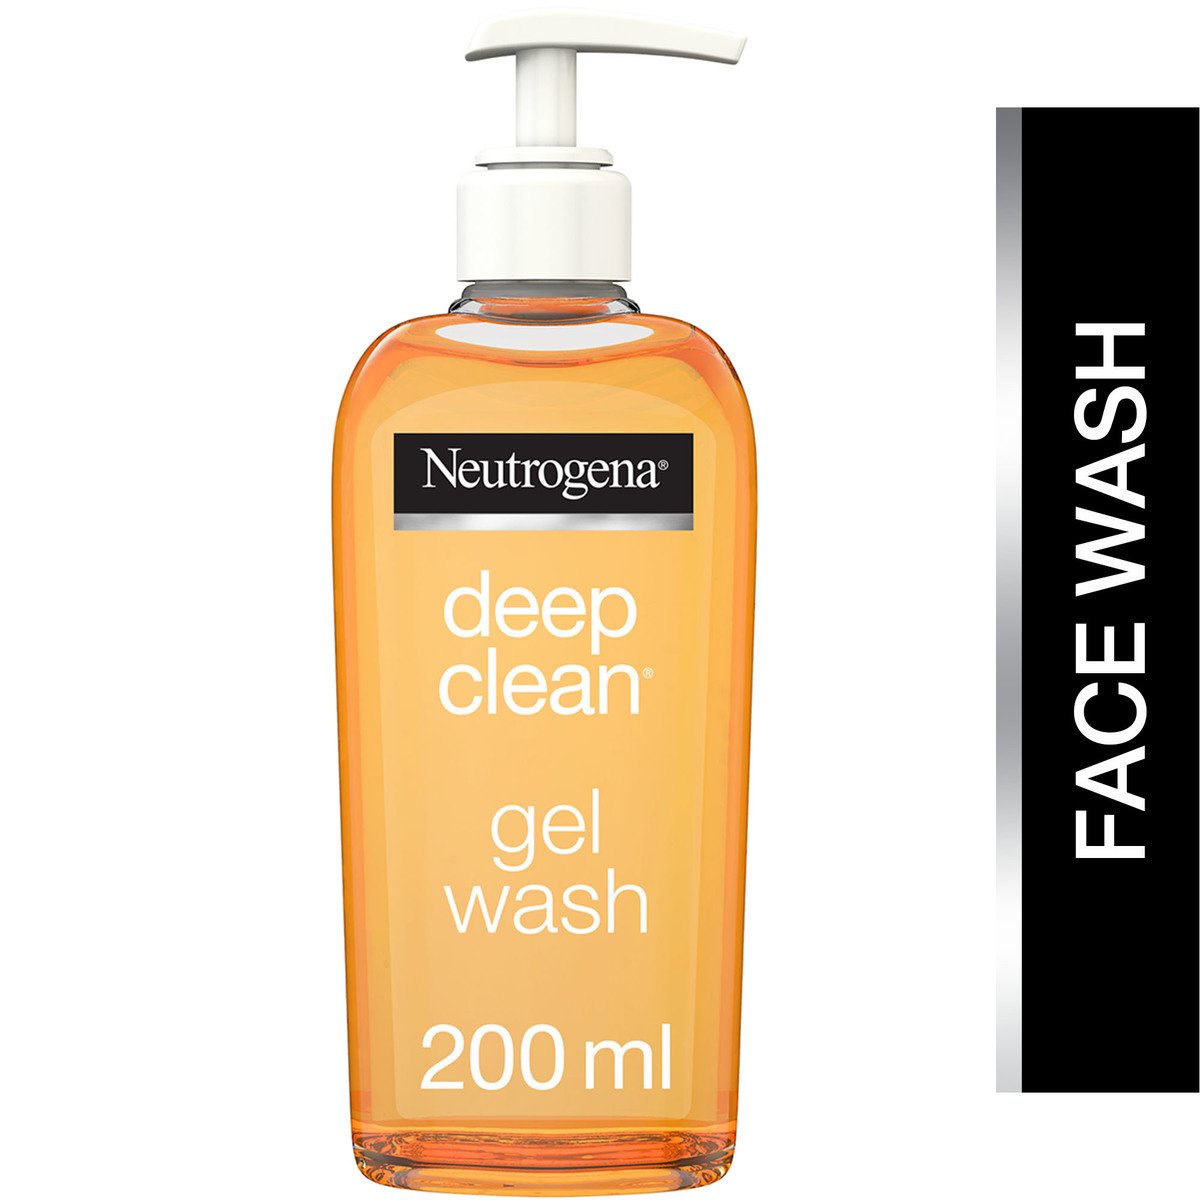 اشتري قم بشراء نيتروجينا غسول الوجه للتنظيف العميق 200 مل Online at Best Price من الموقع - من لولو هايبر ماركت Face Wash في السعودية